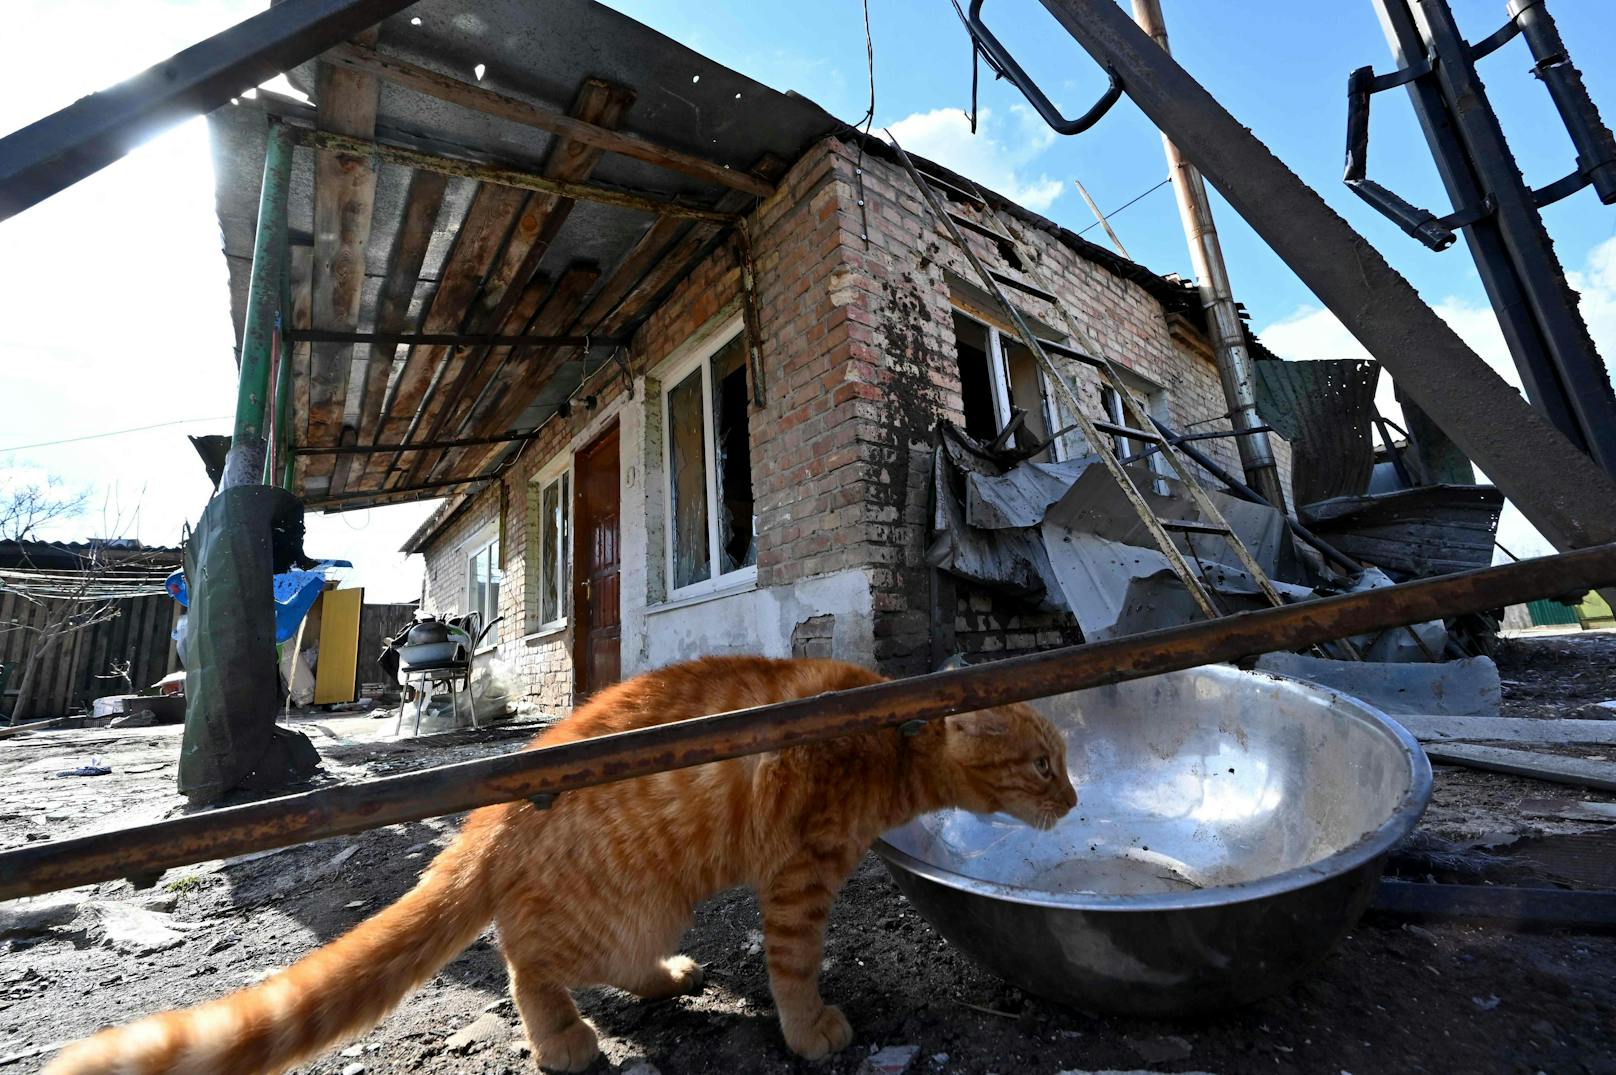 Wir schreiben mittlerweile Tag 16 im Ukraine-Krieg und die Lage spitzt sich weiter zu. "Die Leute haben angefangen, um Lebensmittel zu kämpfen", erklärt das Internationale Komitee vom Roten Kreuz zur Lage in der Stadt Mariupol.